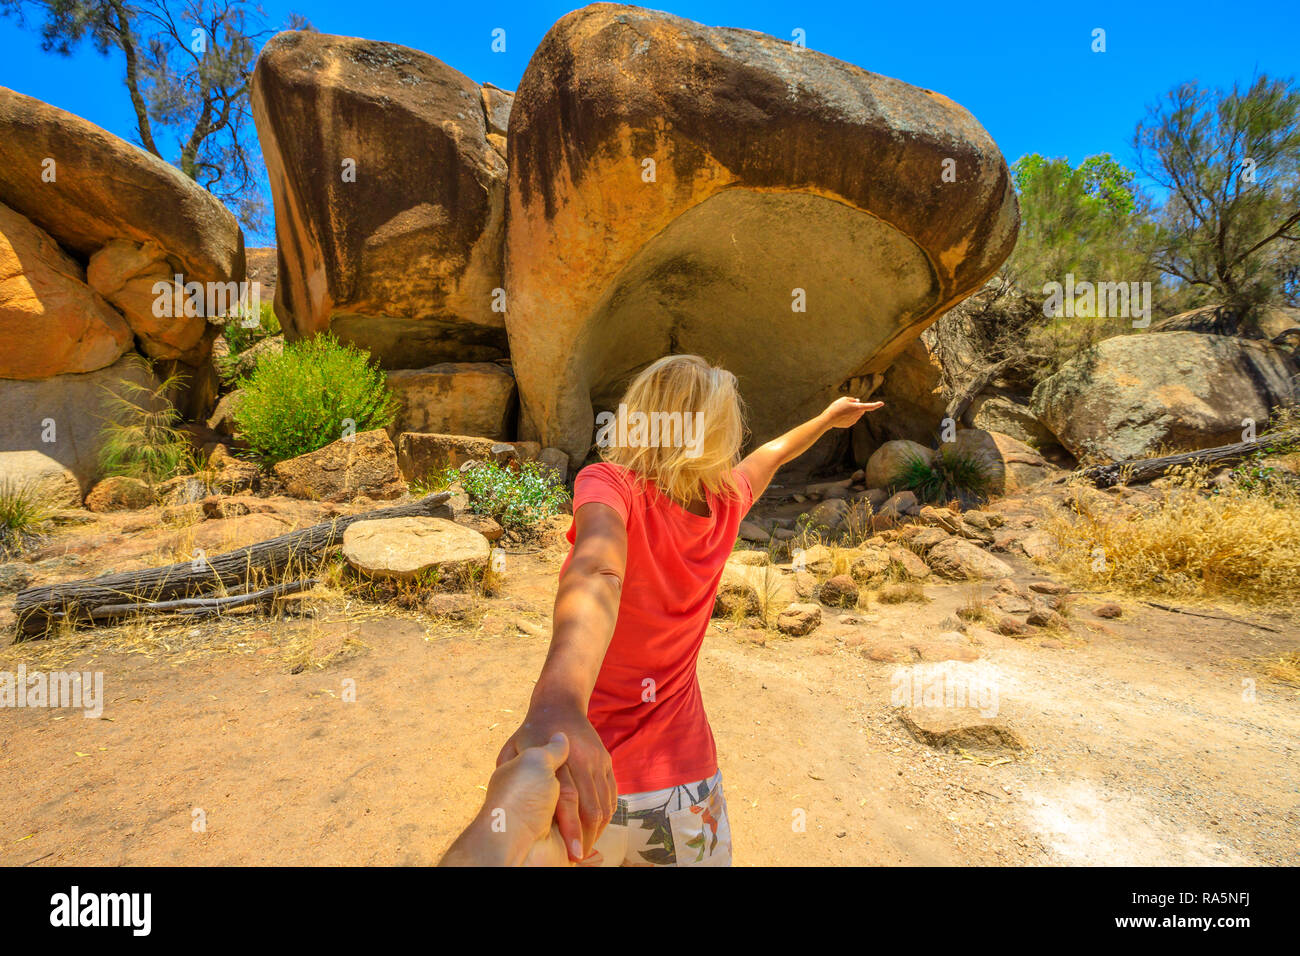 Suivez-moi, woman Holding Hands, à Hippo's Yawn, un rocher en forme de hippo près de Wave Rock dans la région de Hyden, outback australien, dans l'ouest de l'Australie. Concept de voyage d'agrément, l'homme tenant à la main. Banque D'Images